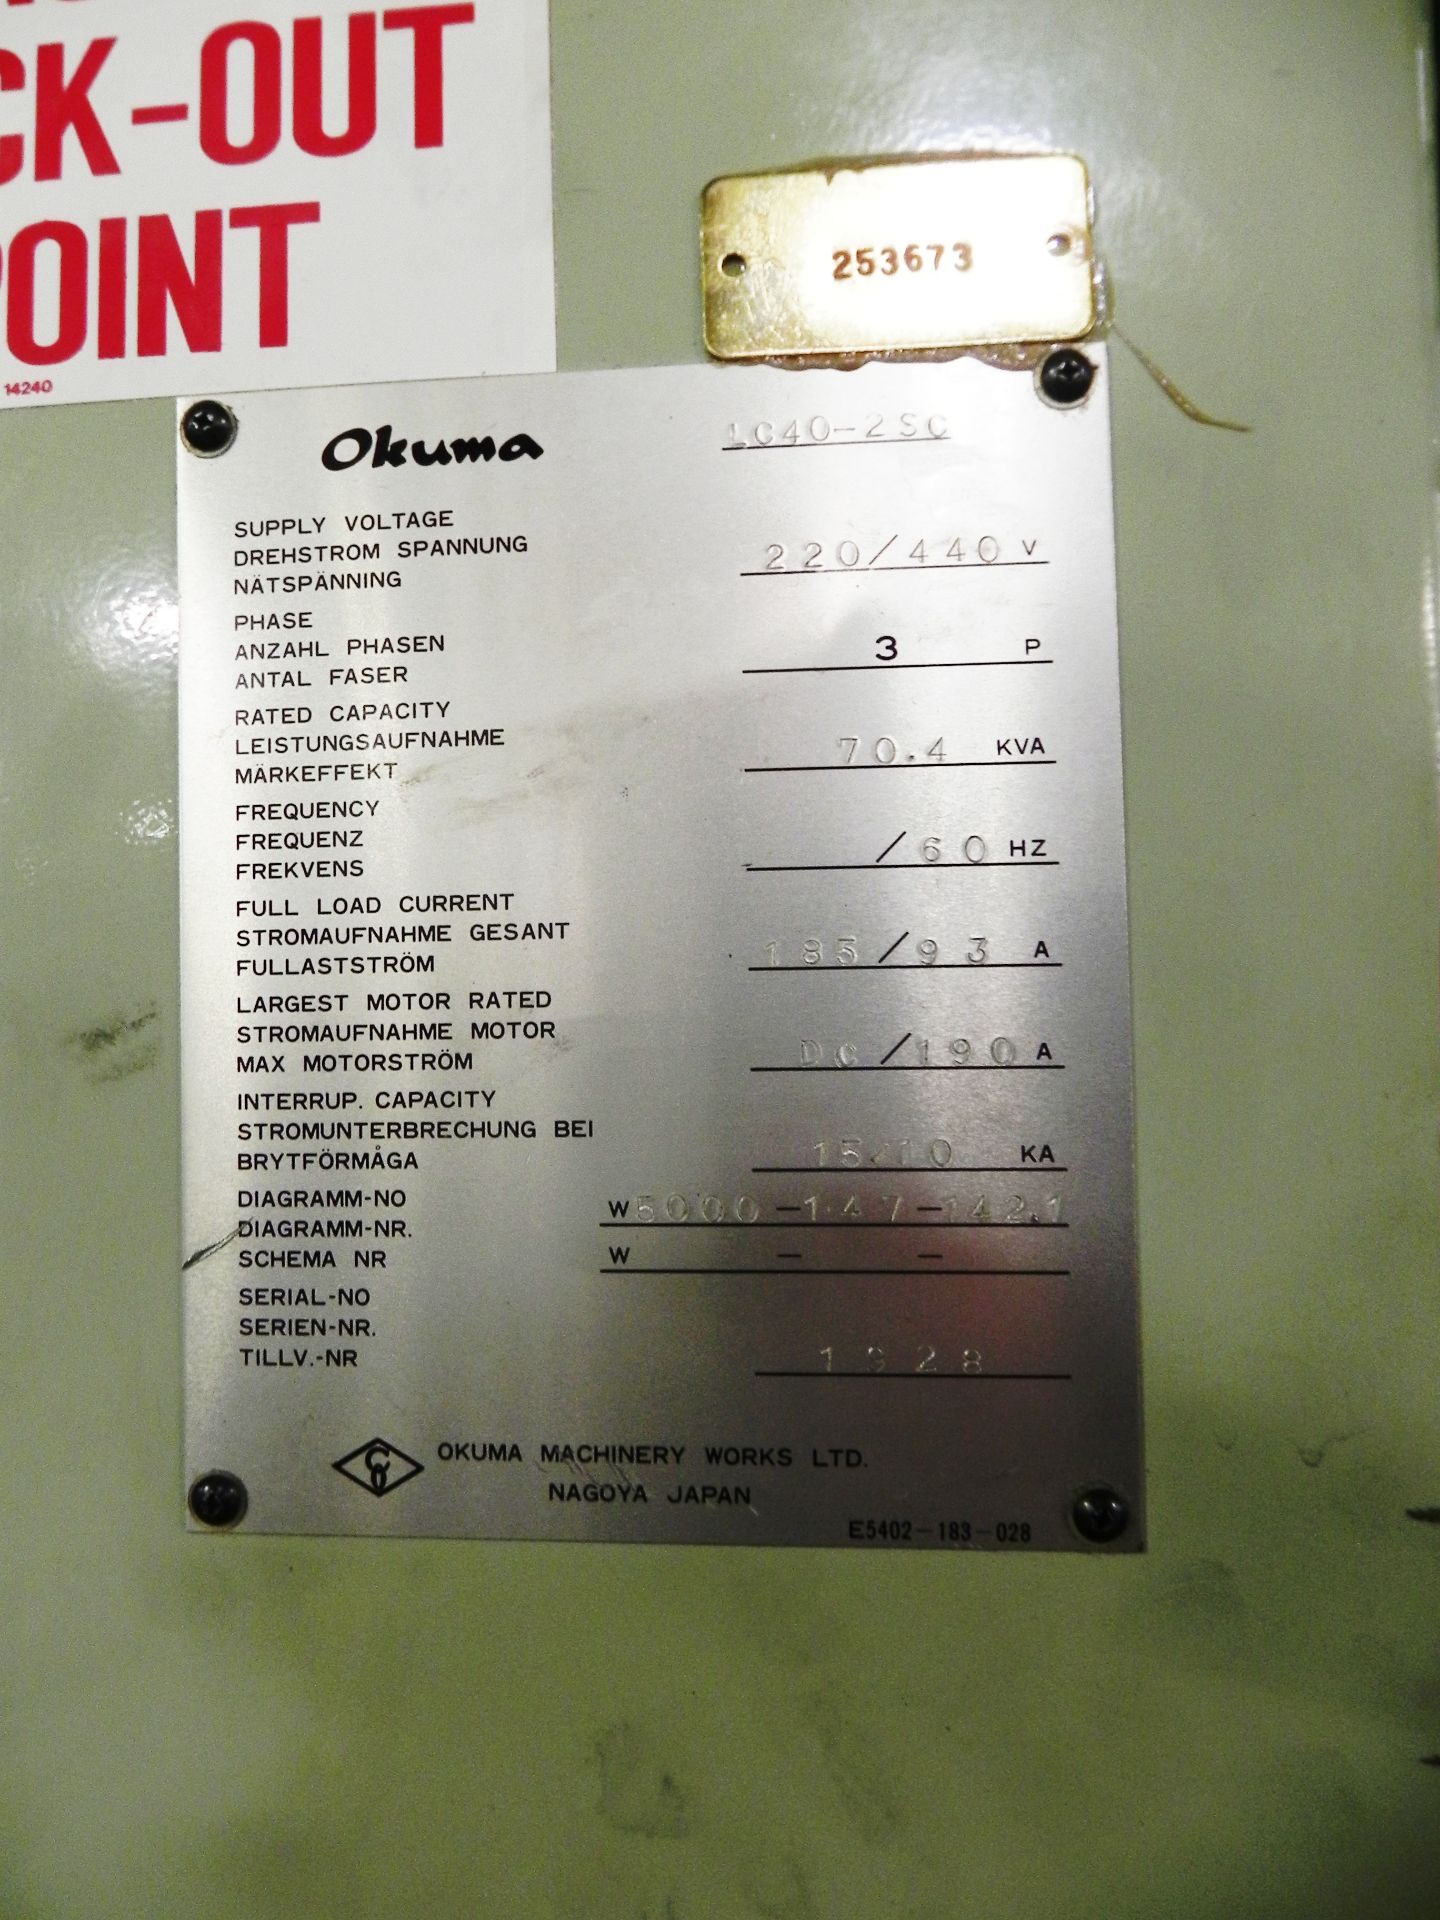 Okuma LC40-2SC 4-Axis Simulturn CNC Lathe - Image 9 of 10